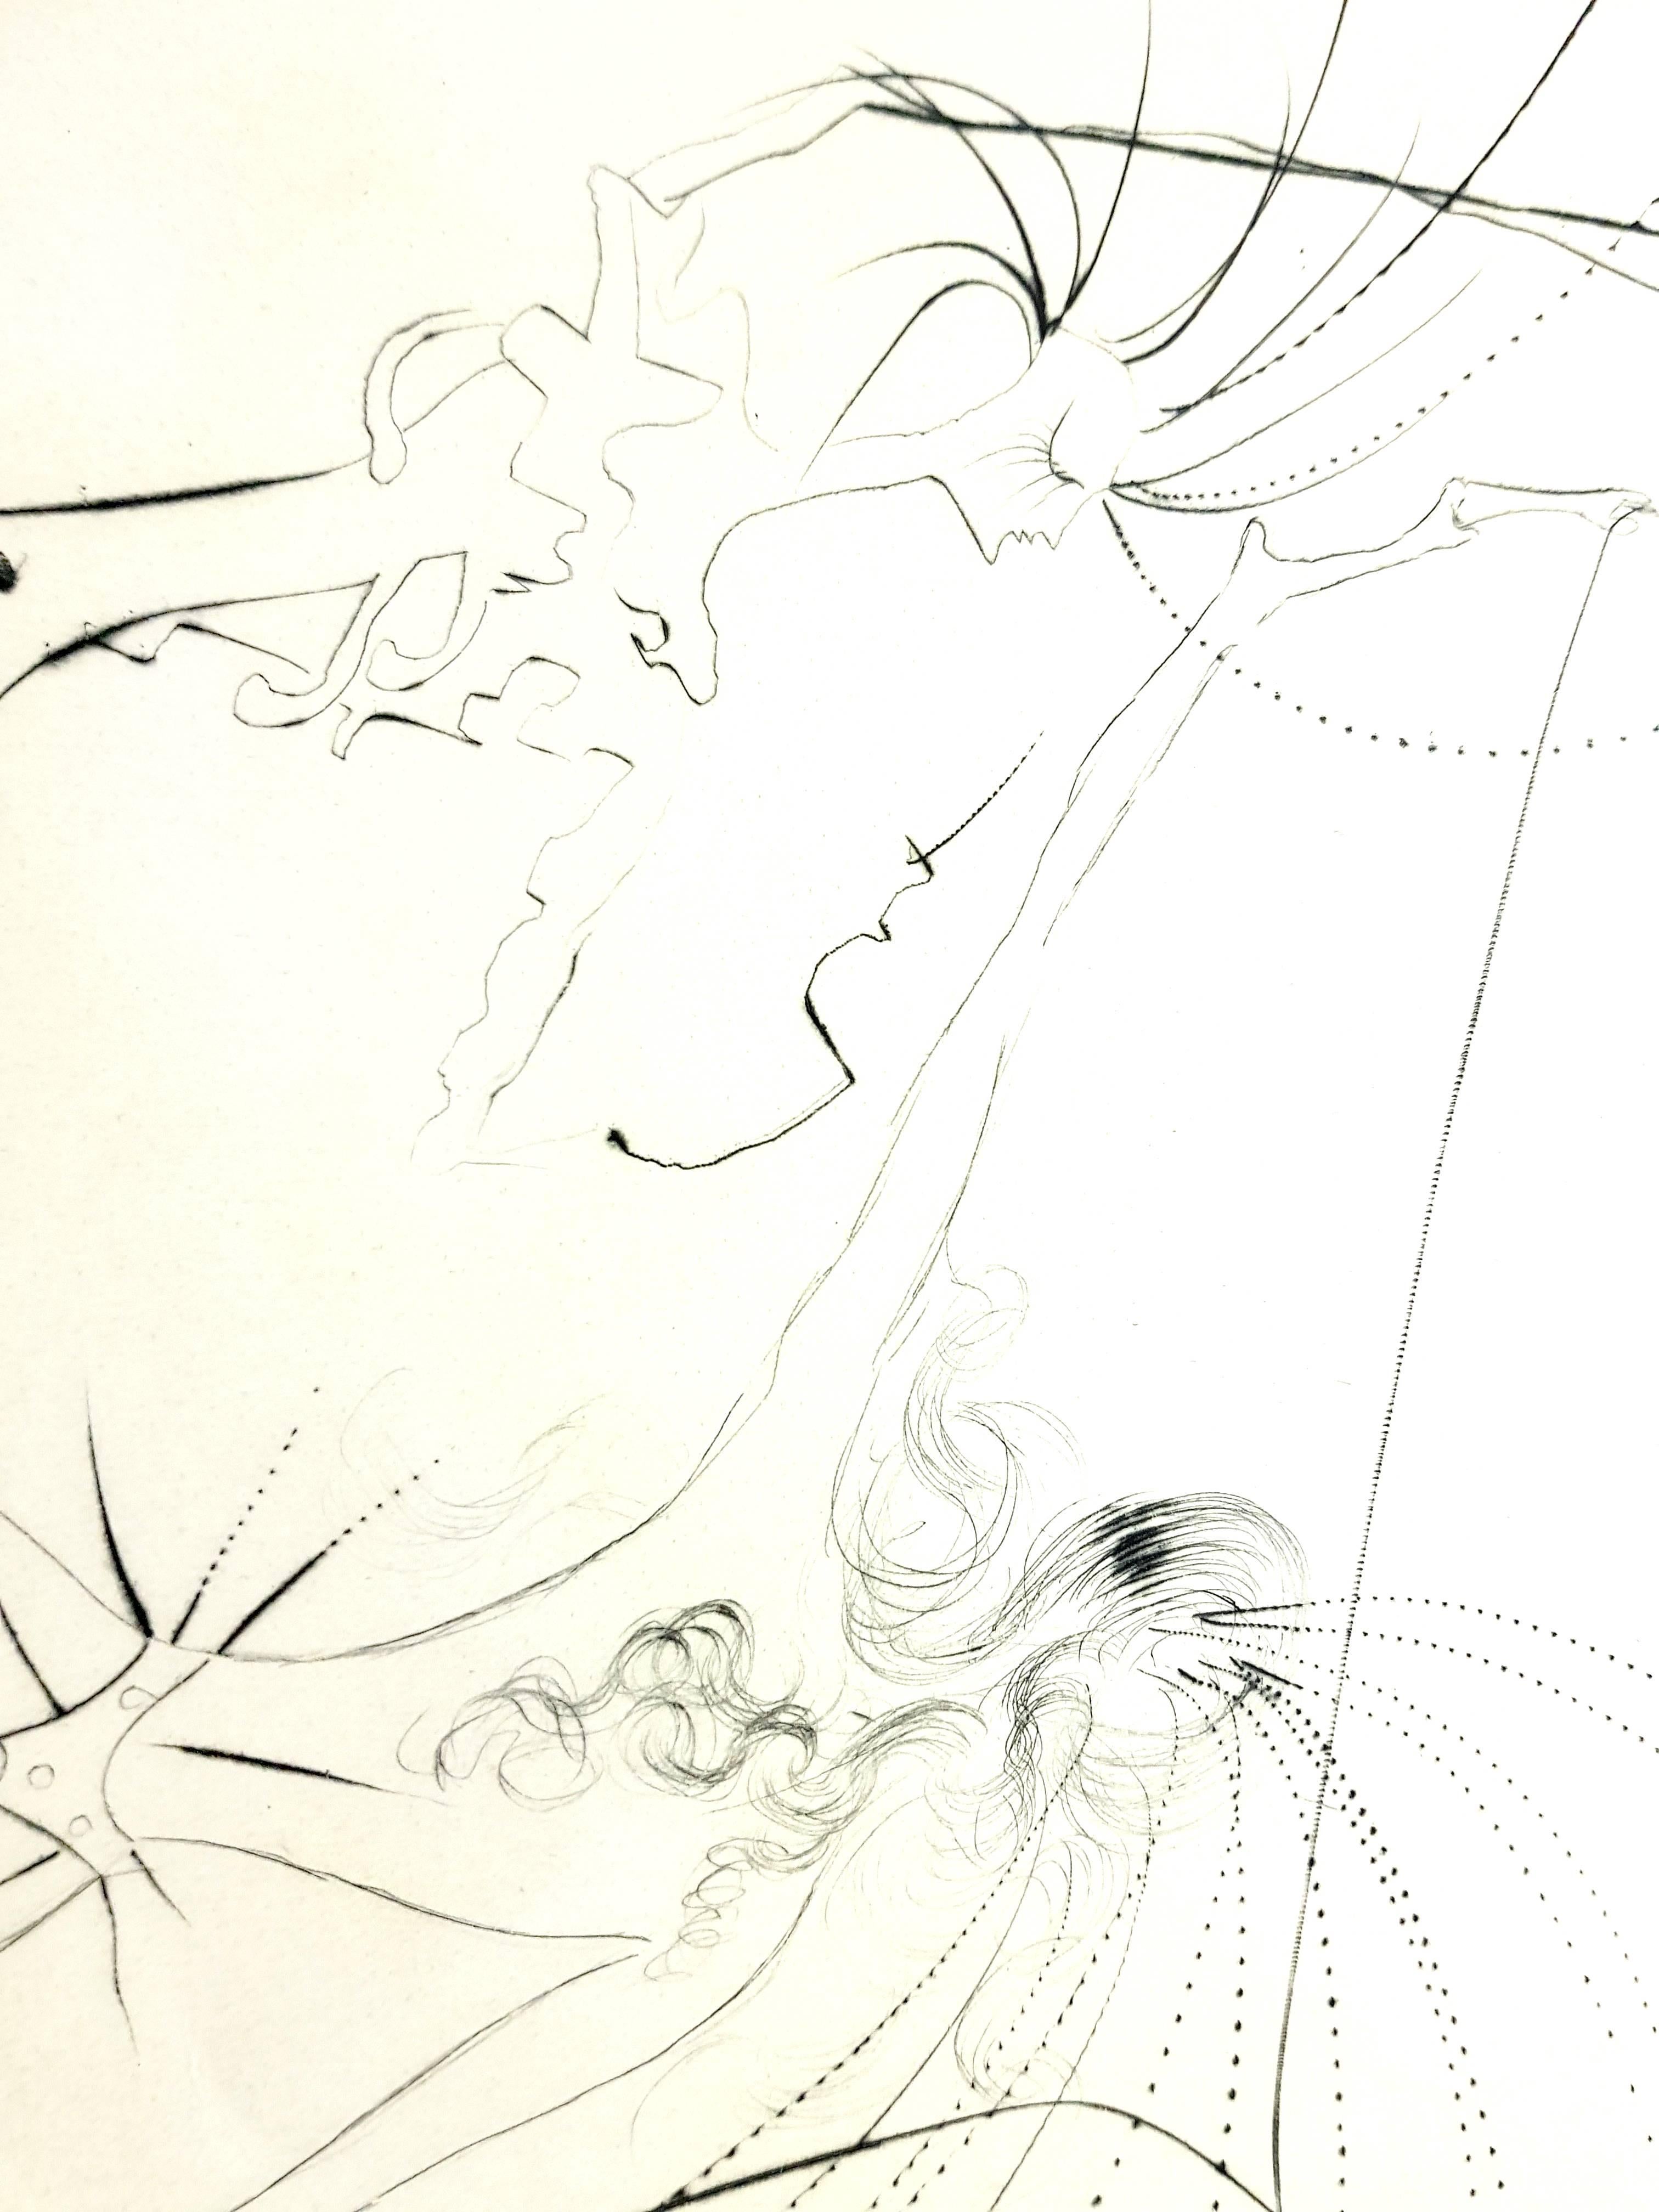 Salvador Dali - Pichets saillants - Gravure originale signée par le tampon
Tampon signé par Dali
Édition de 294 exemplaires. 
Papier : Vellum d'Arches. 
Dimensions : 16x12